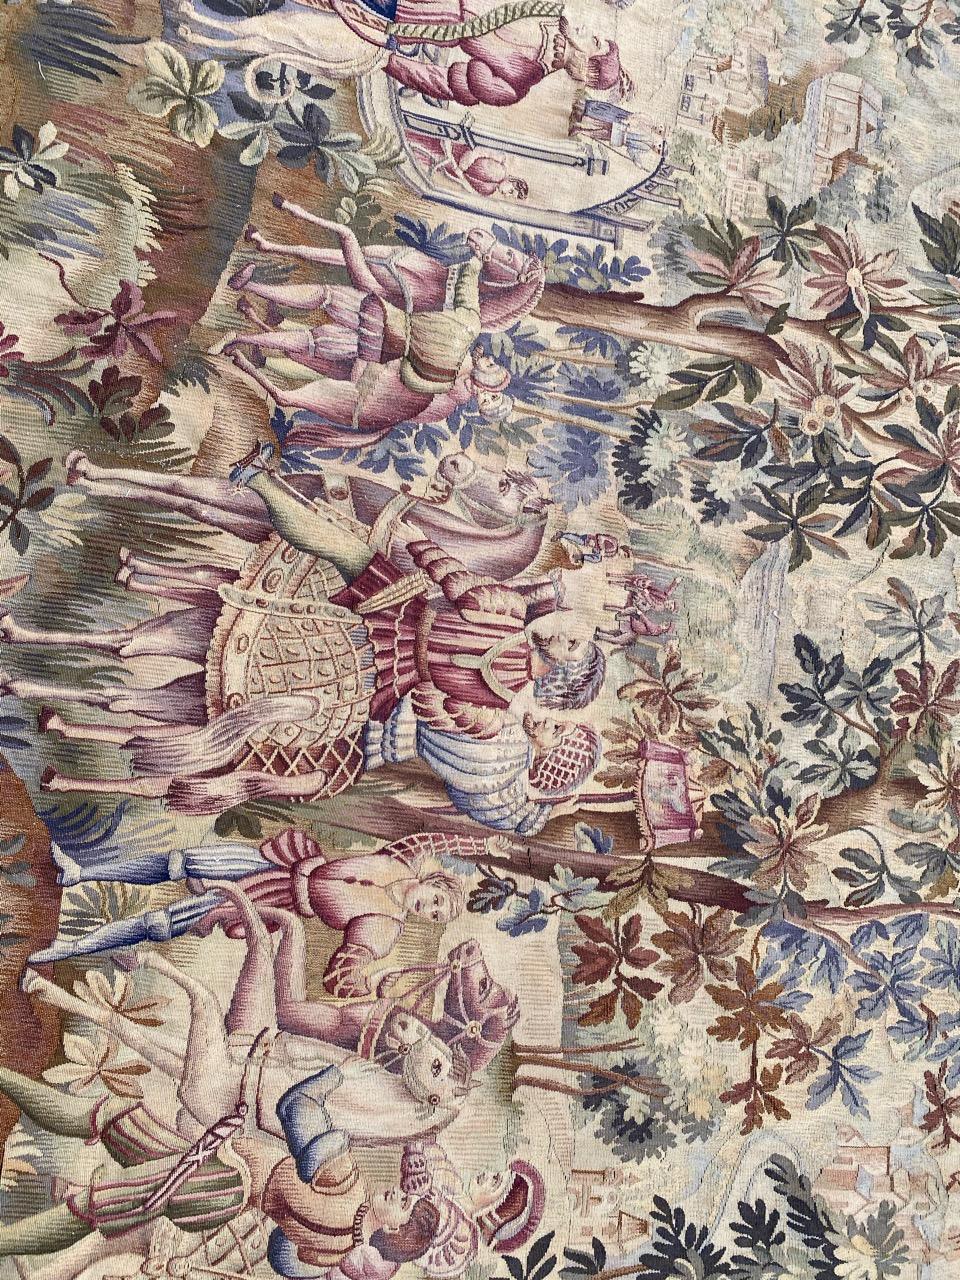 Très belle tapisserie française d'Aubusson de la fin du 19ème siècle avec de beaux motifs de tapisseries plus anciennes probablement avec des motifs historiques de Maximilian, et de belles couleurs, entièrement tissée à la main avec de la laine et